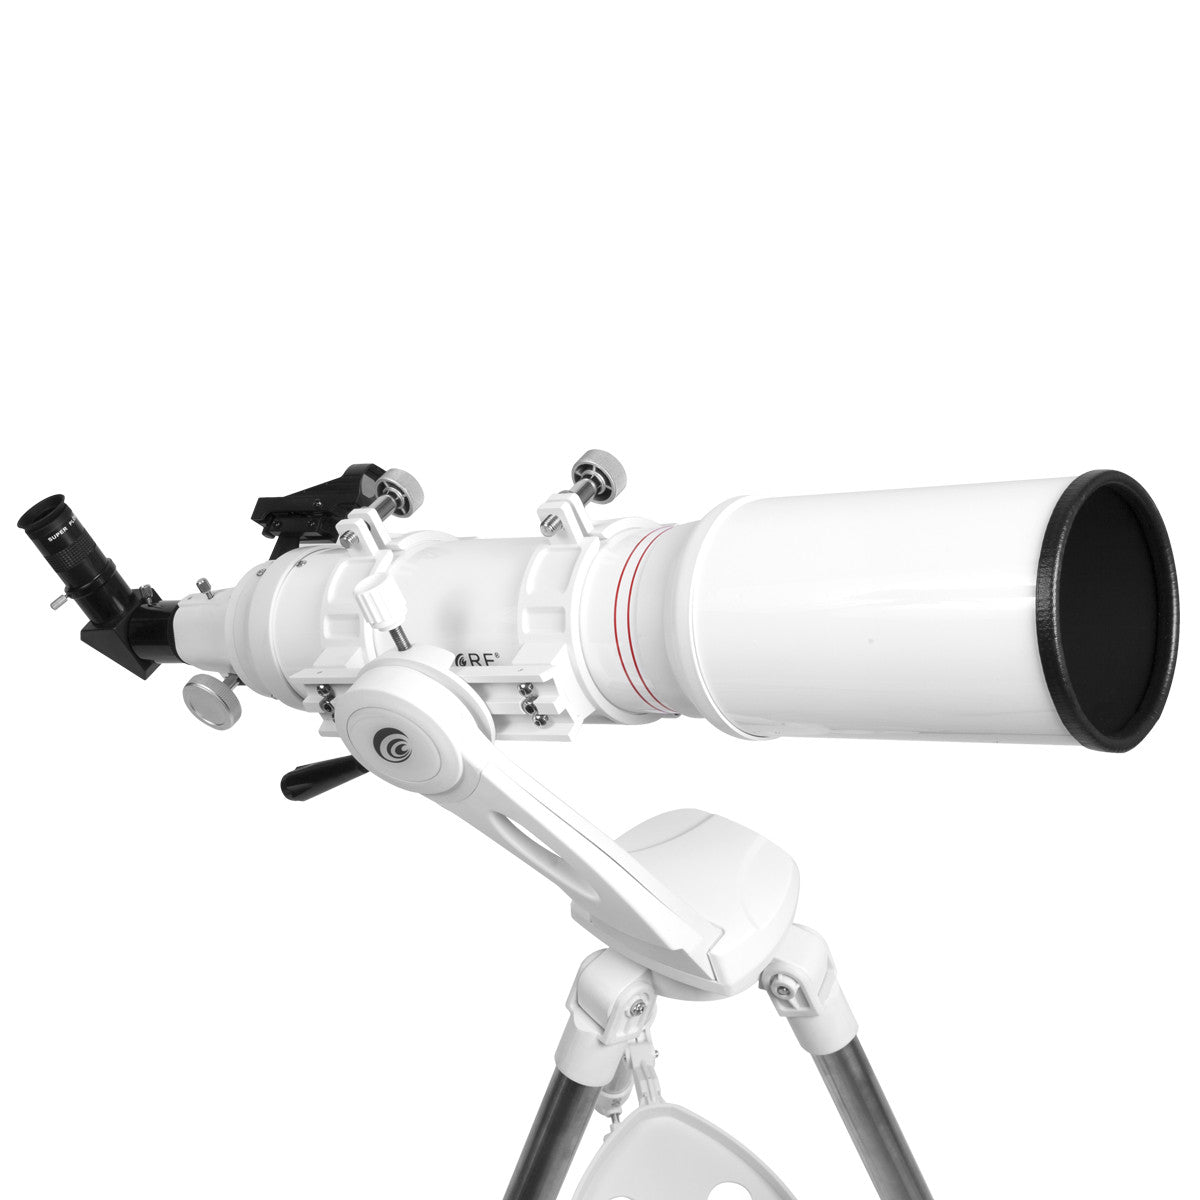 Explore Scientific FirstLight 102mm Doublet Refractor Telescope with Twilight Nano Mount - FL-AR102600TN